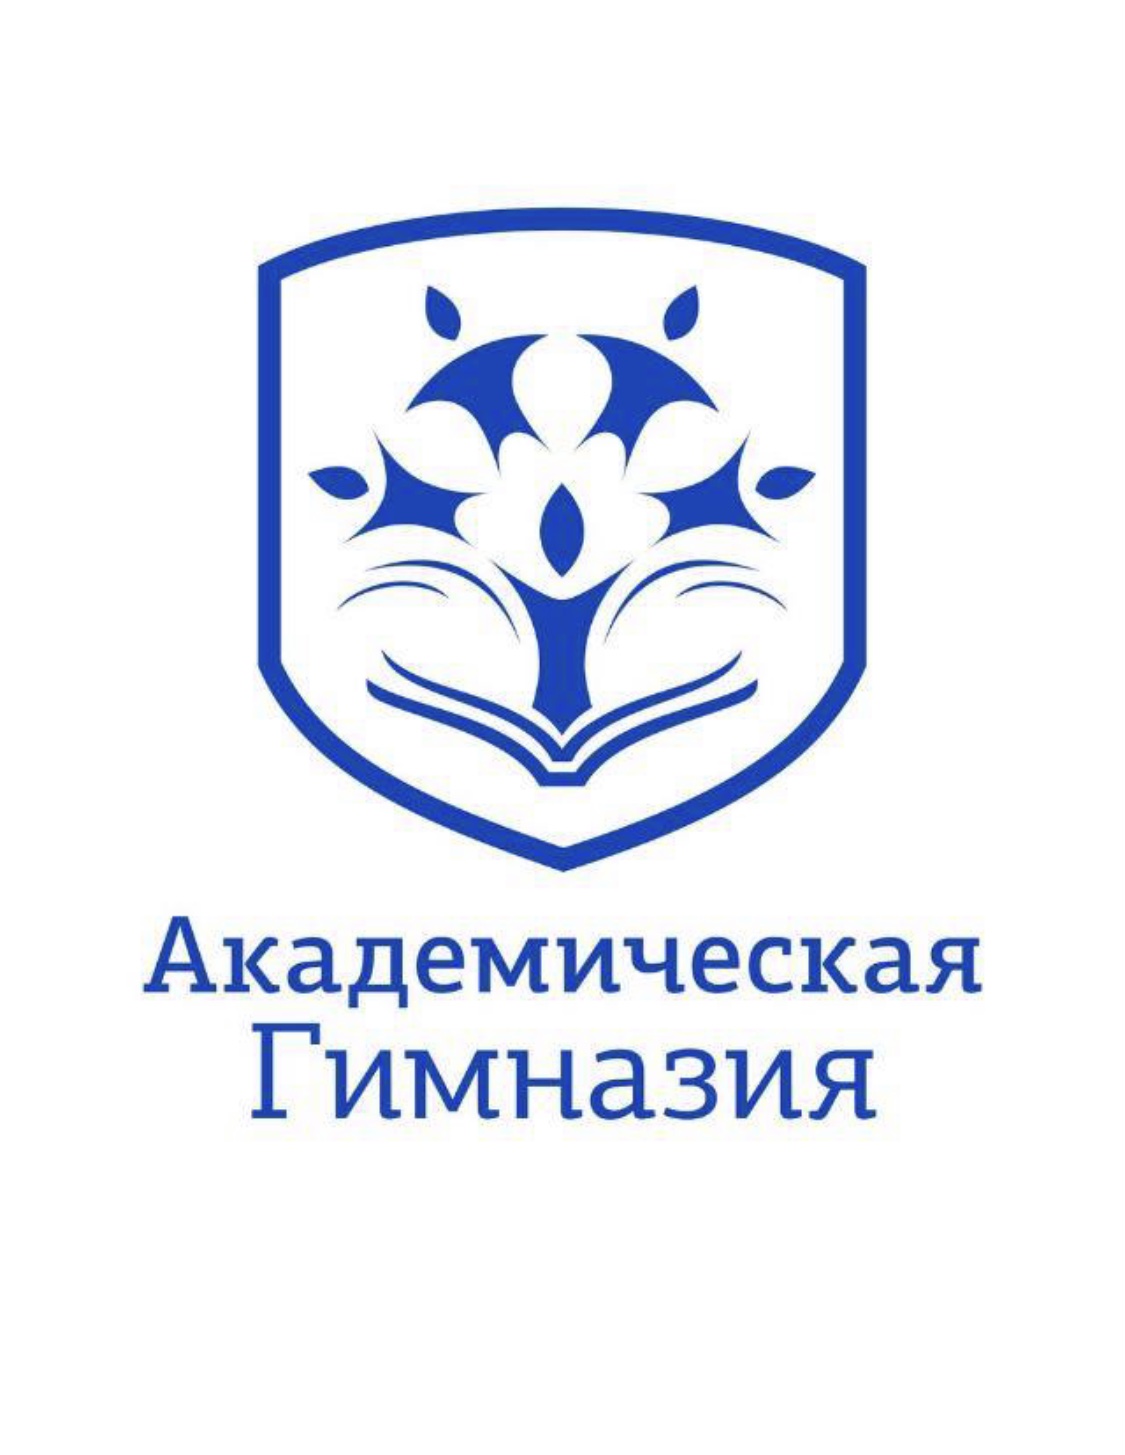 АНО СШО Академическая гимназия Логотип(logo)